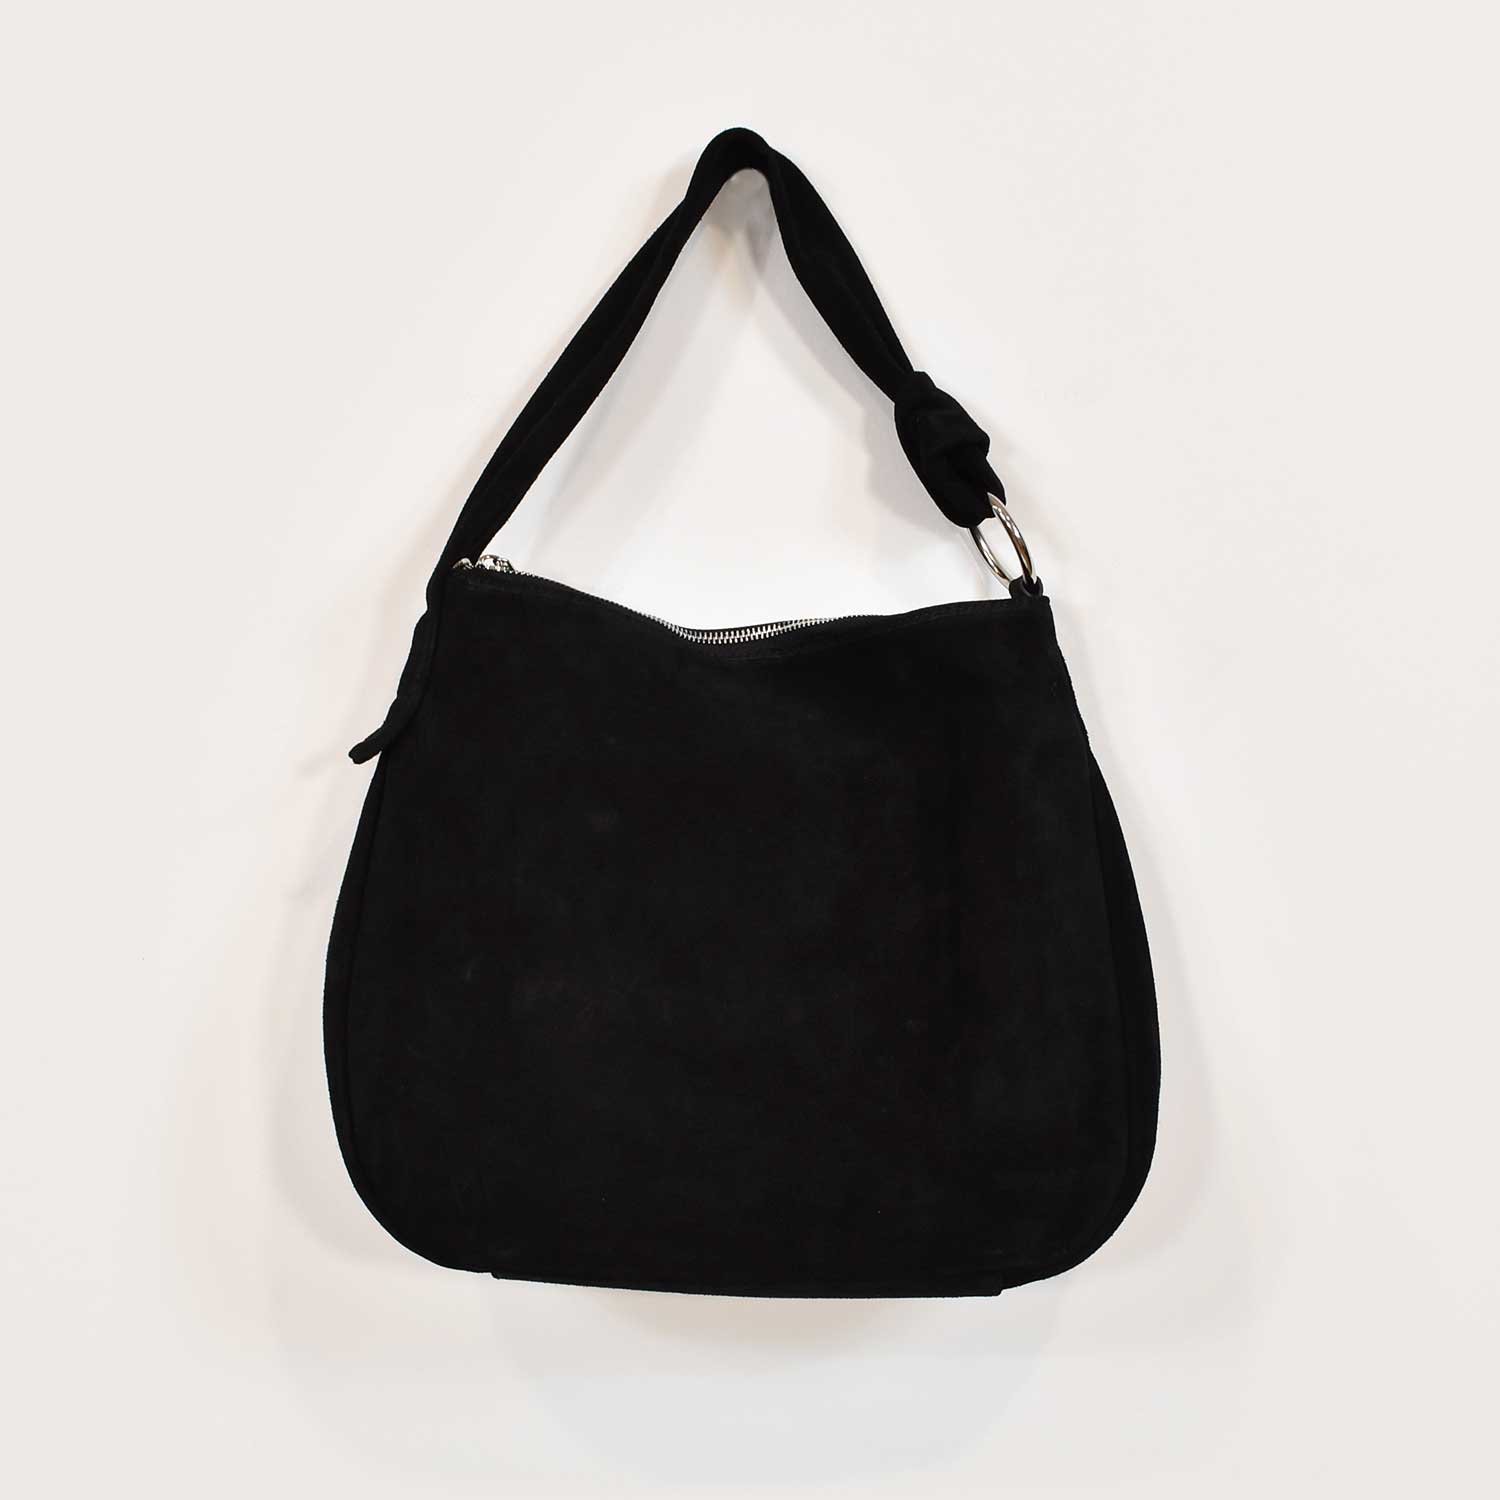 Black suede leather handbag
